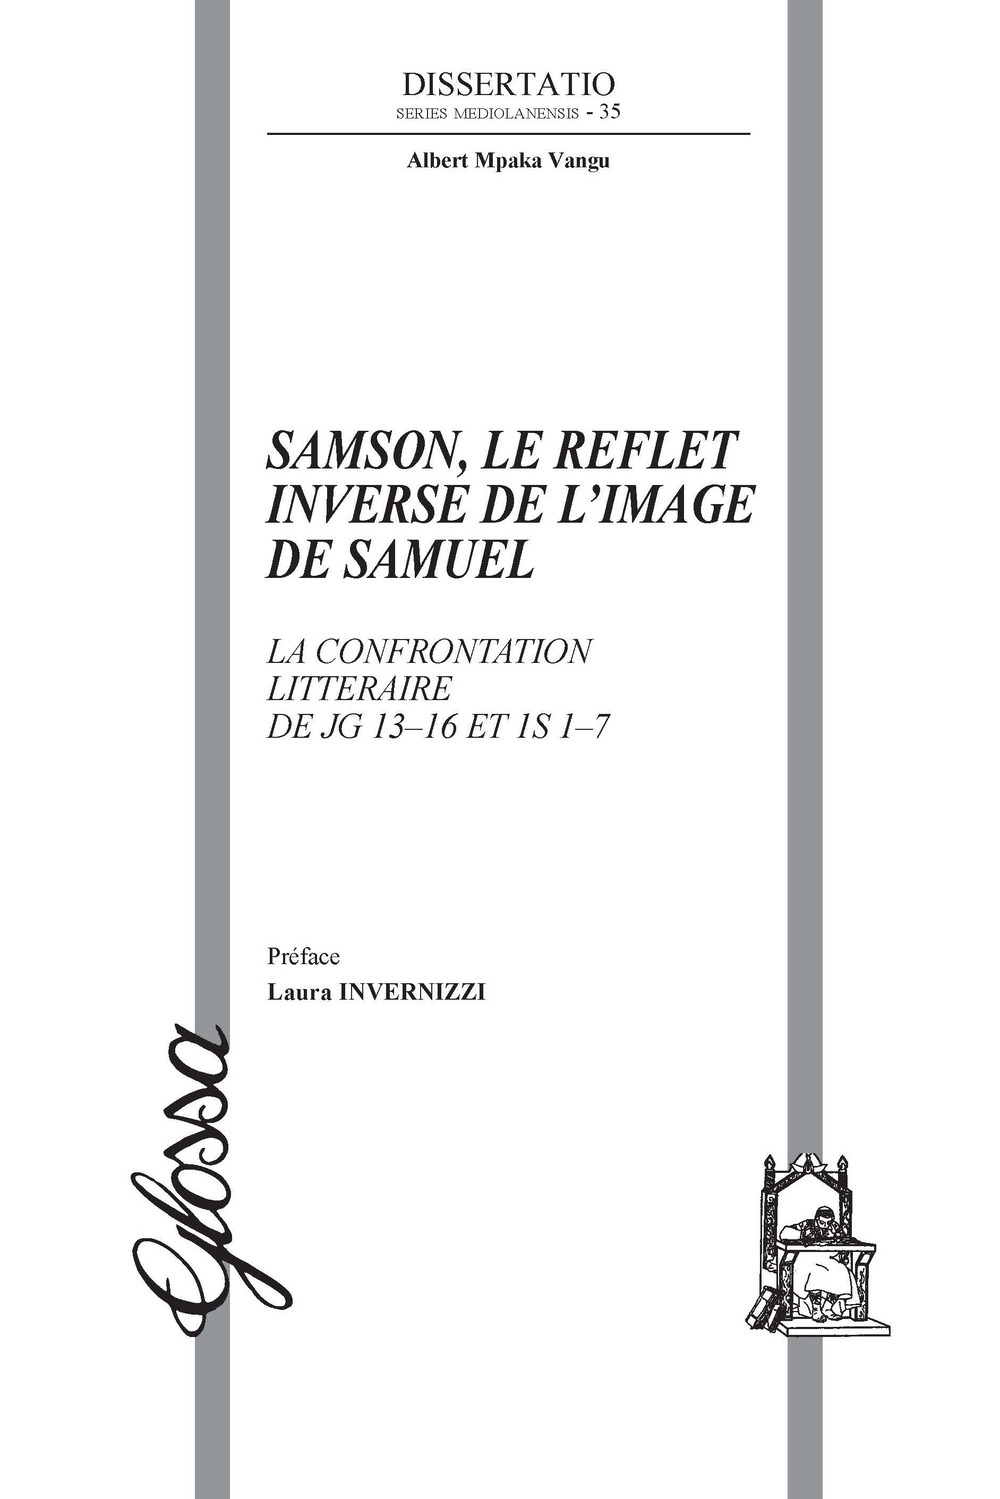 Samson, le reflet inverse de l'image de Samuel. La confrontation littéraire de Jg 13-16 et 1S 1-7